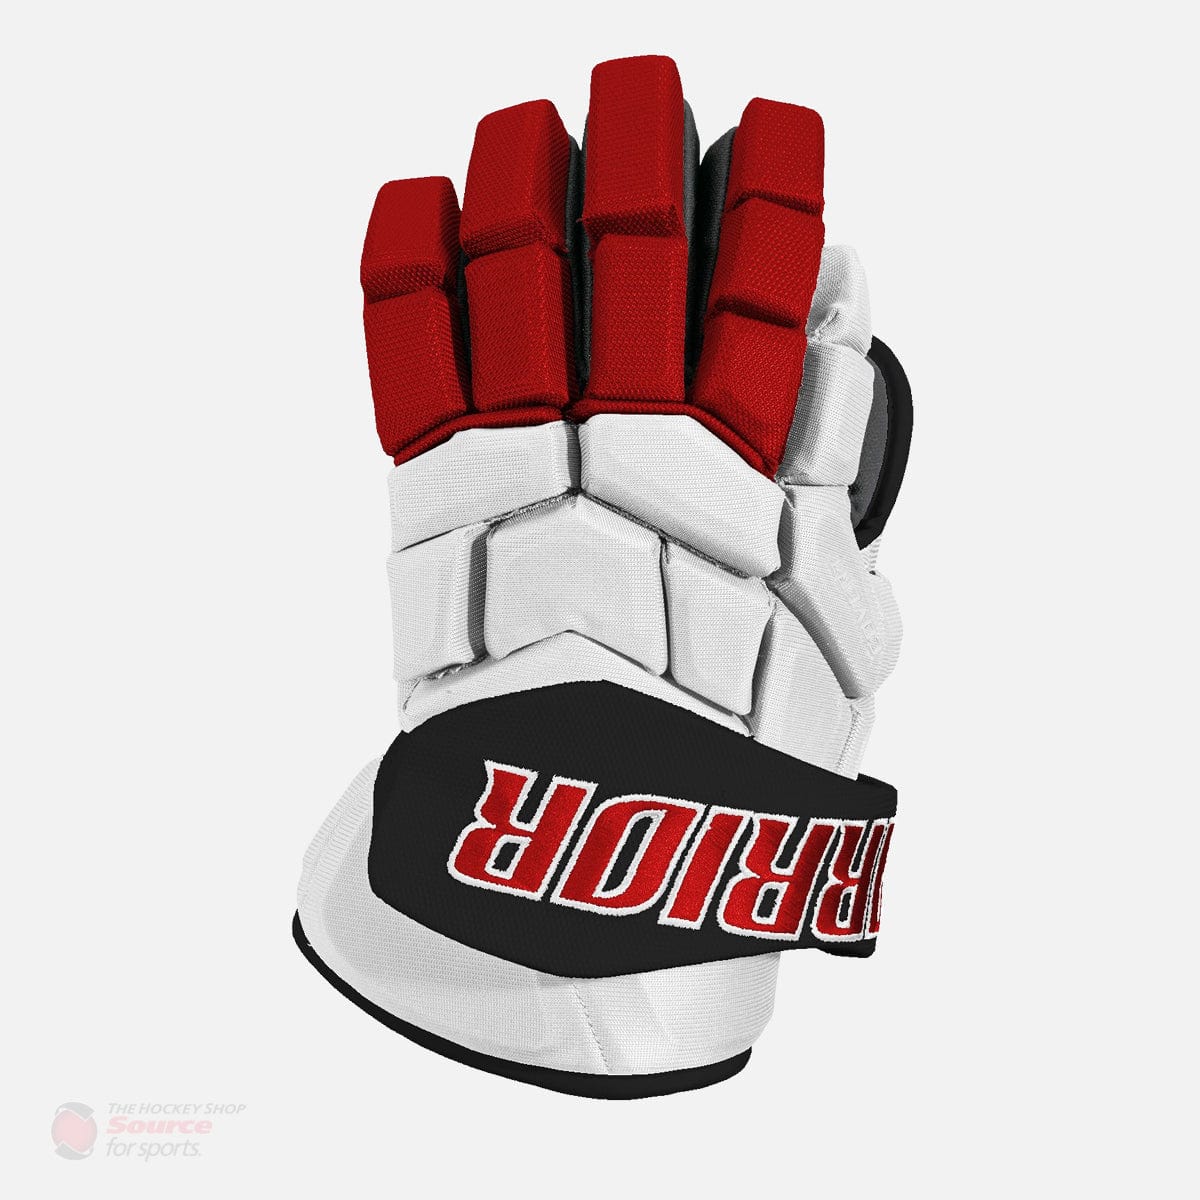 Warrior Covert Pro Custom Hockey Gloves